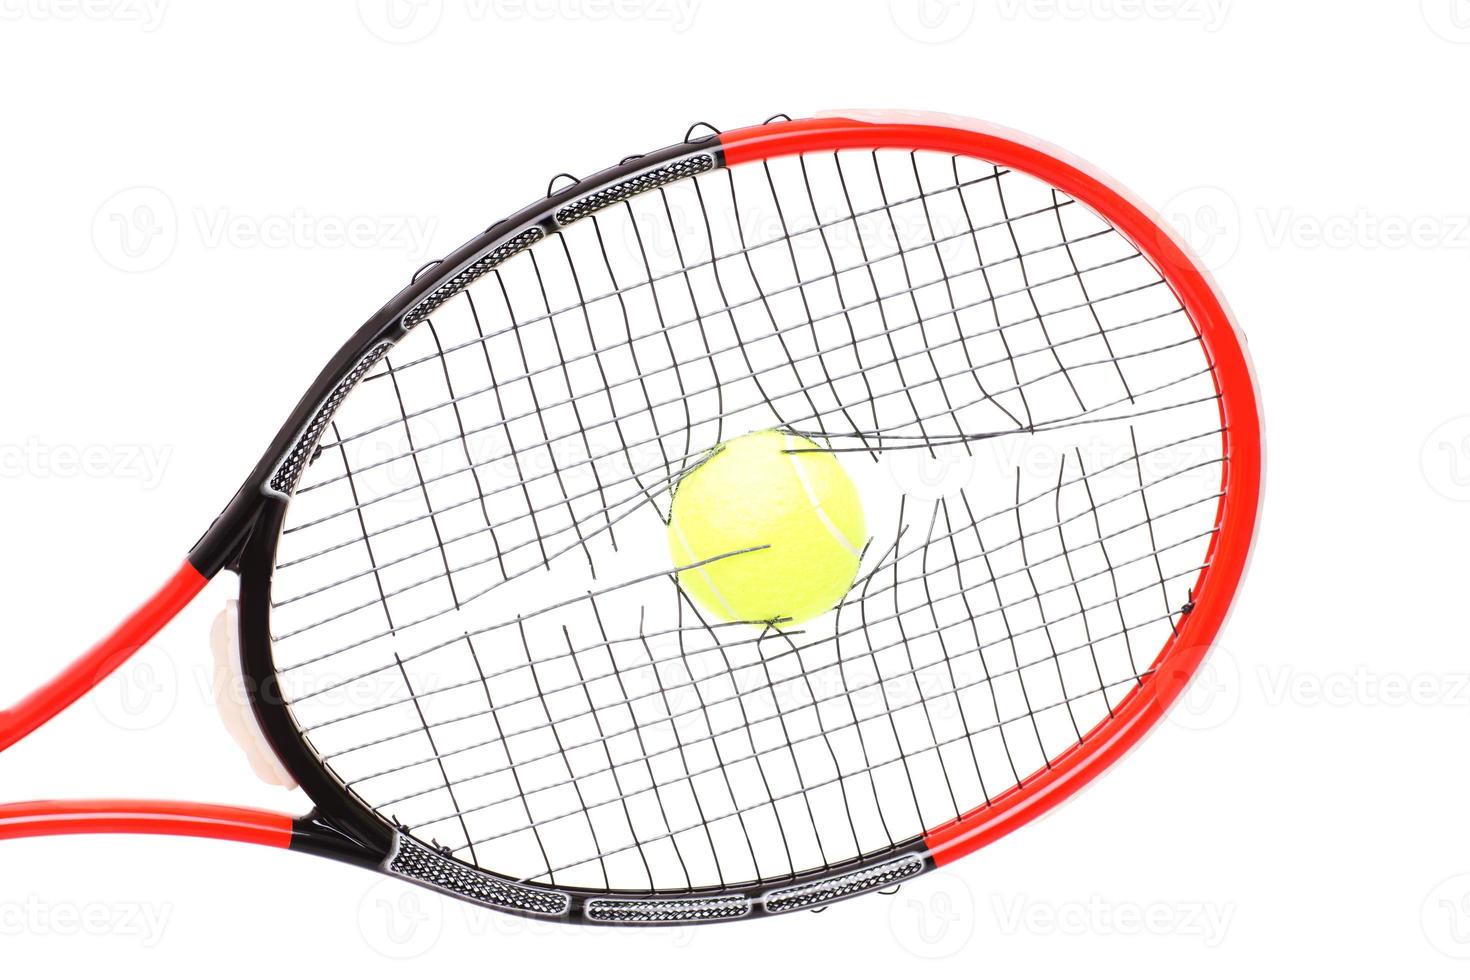 cordes cassées dans une raquette de tennis photo